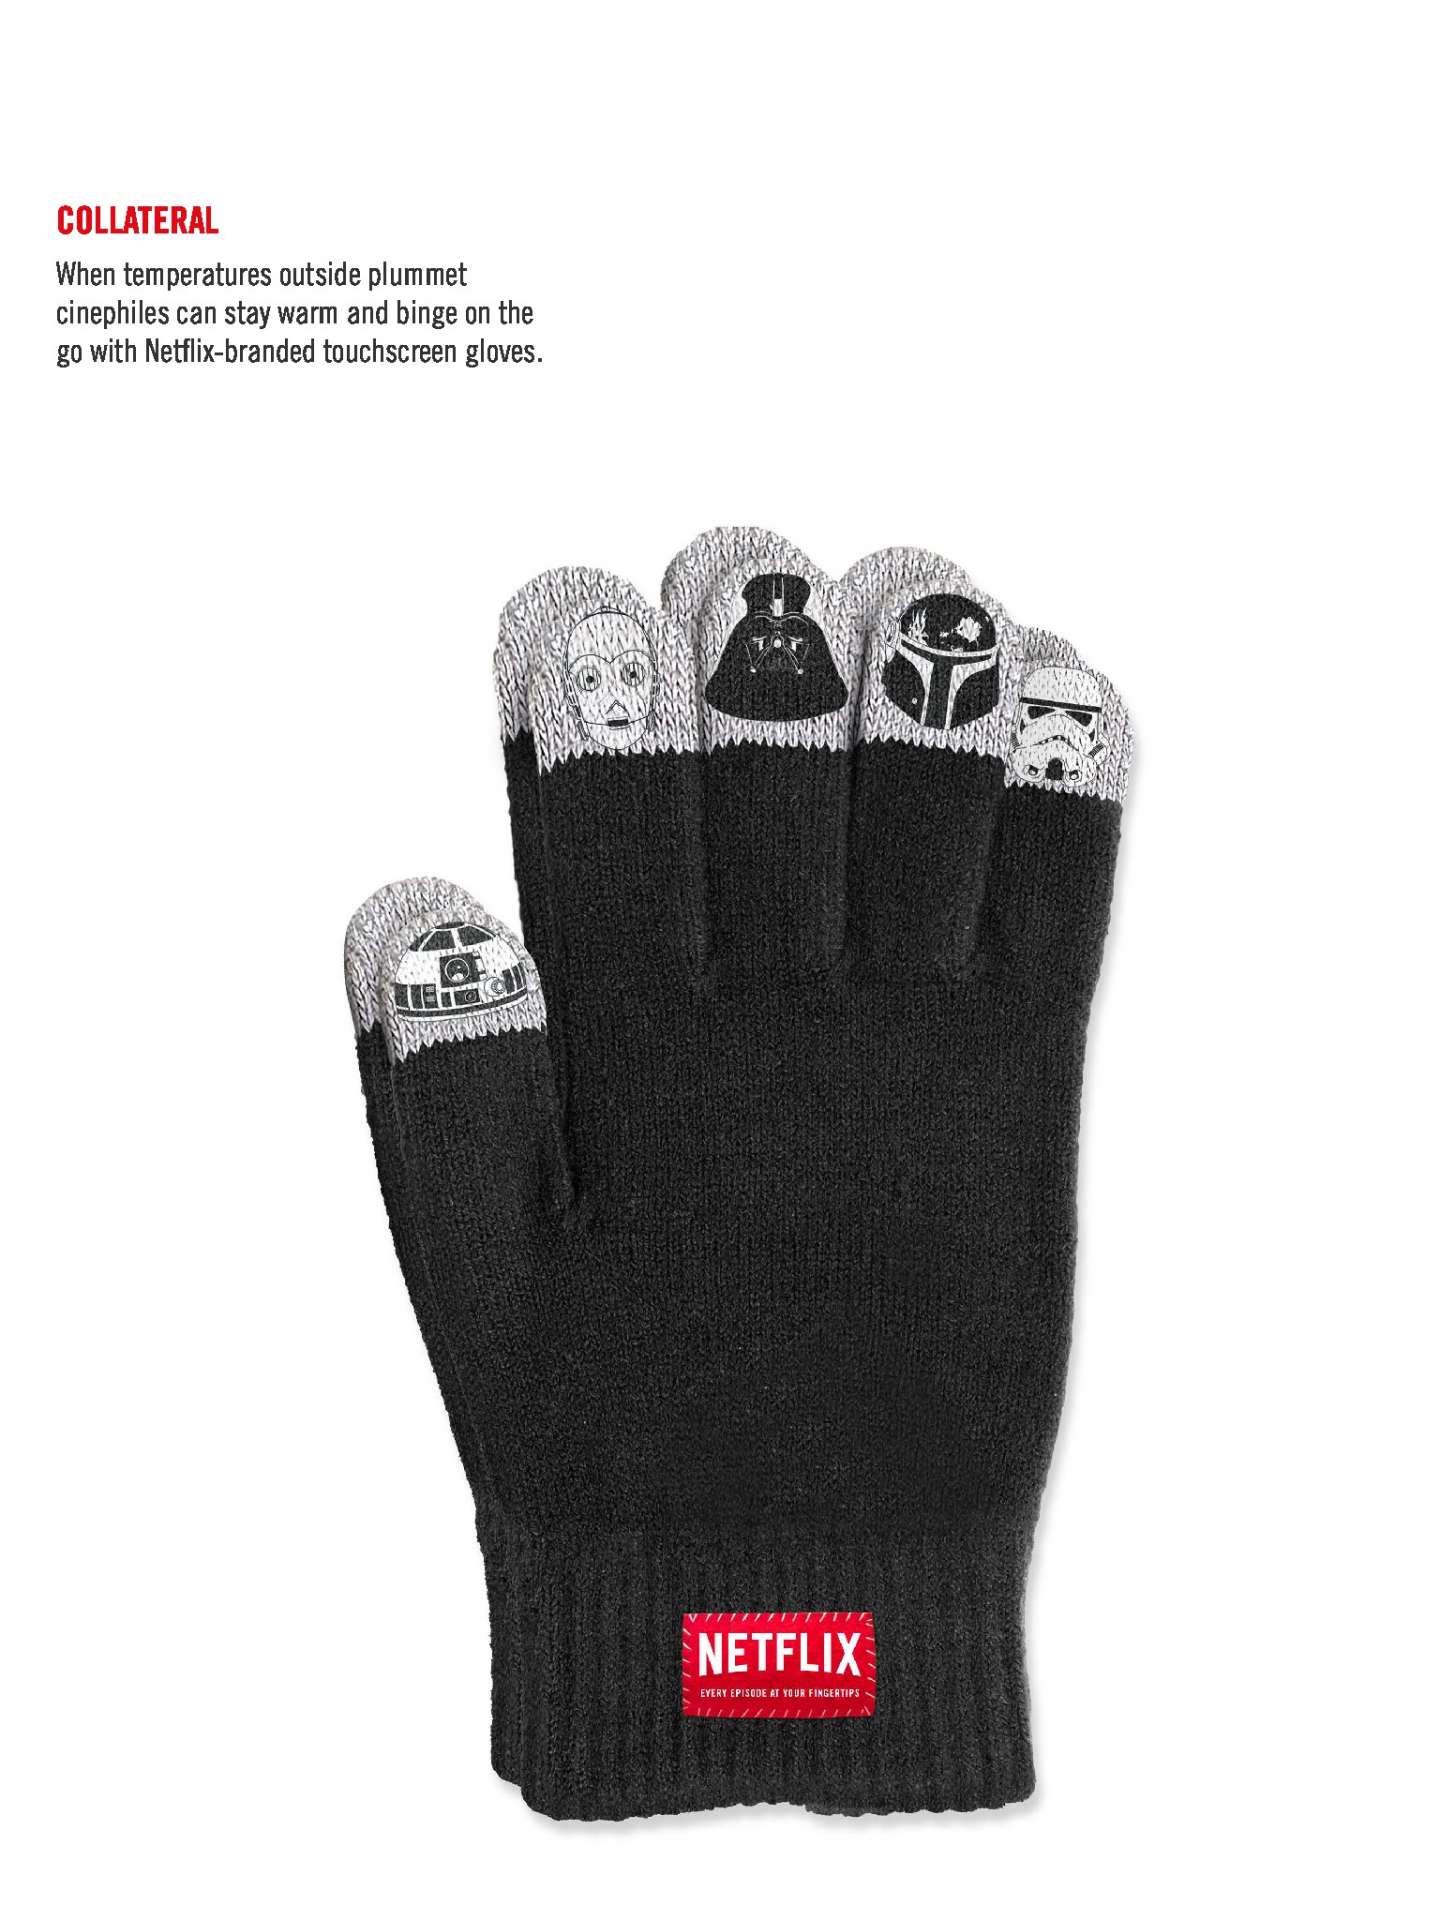 Netflix: Fingertips